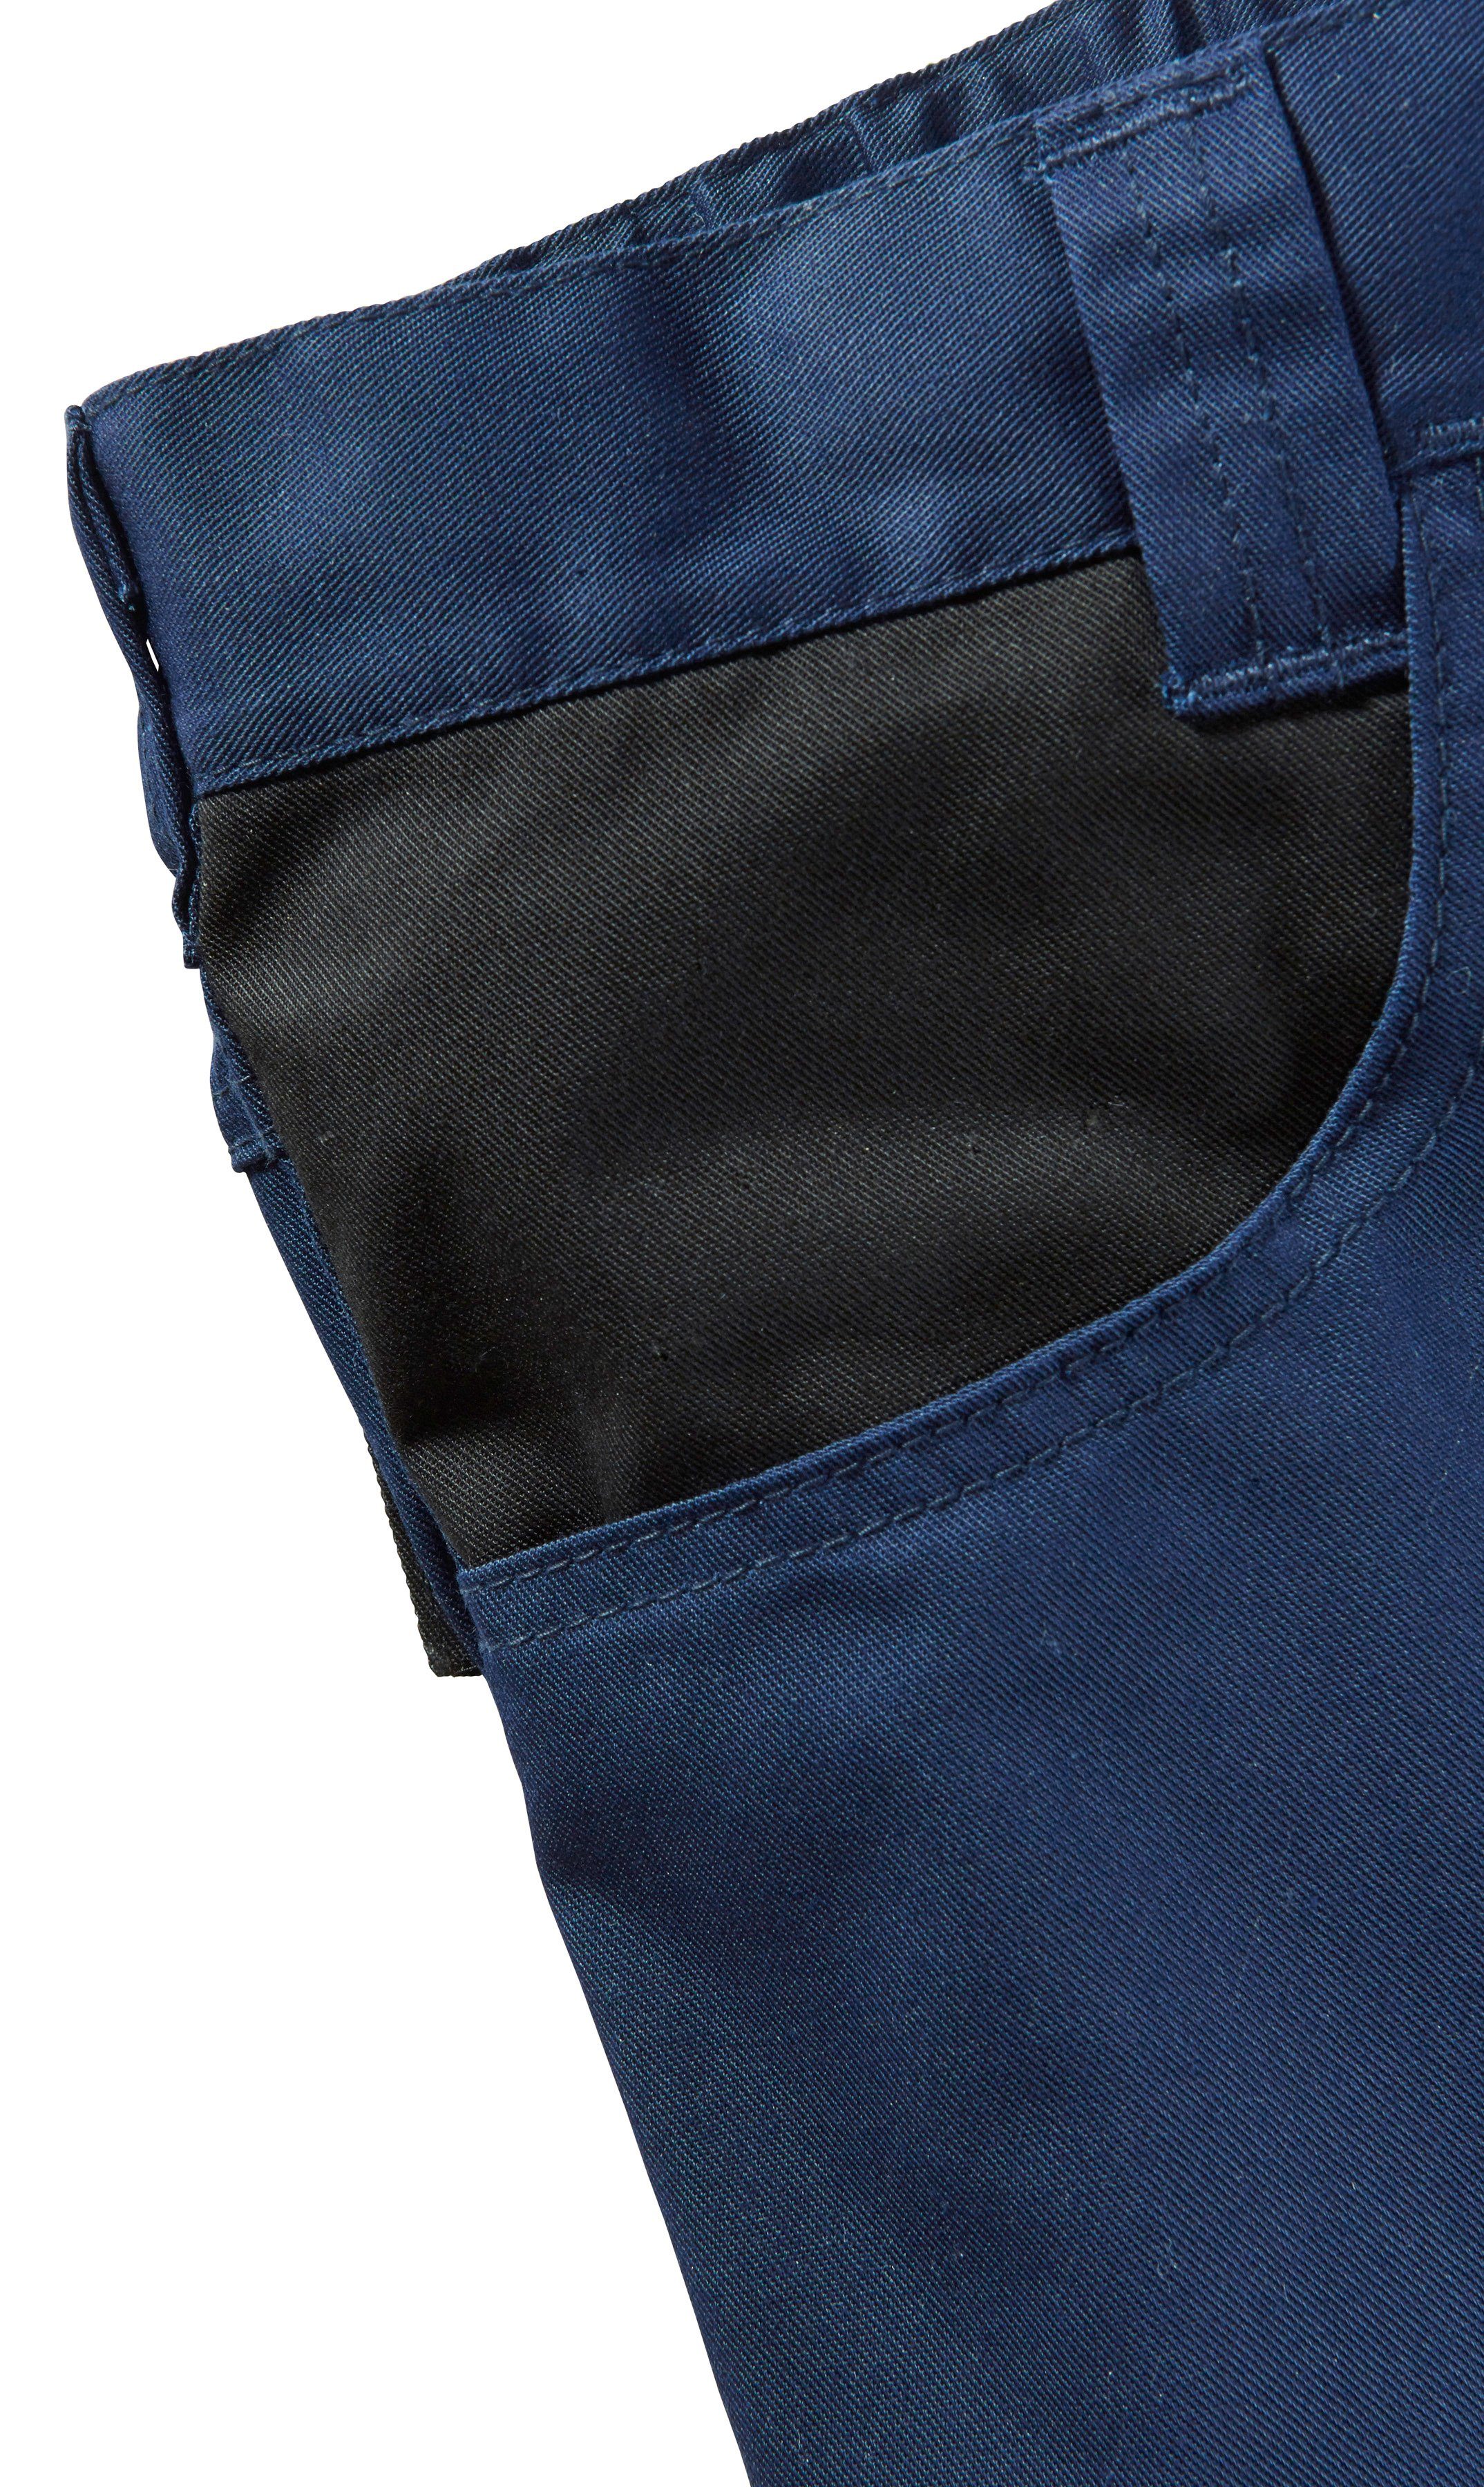 Reflexeinsatz dunkelblau-schwarz mar more Arbeitsshorts mit safety& Pull